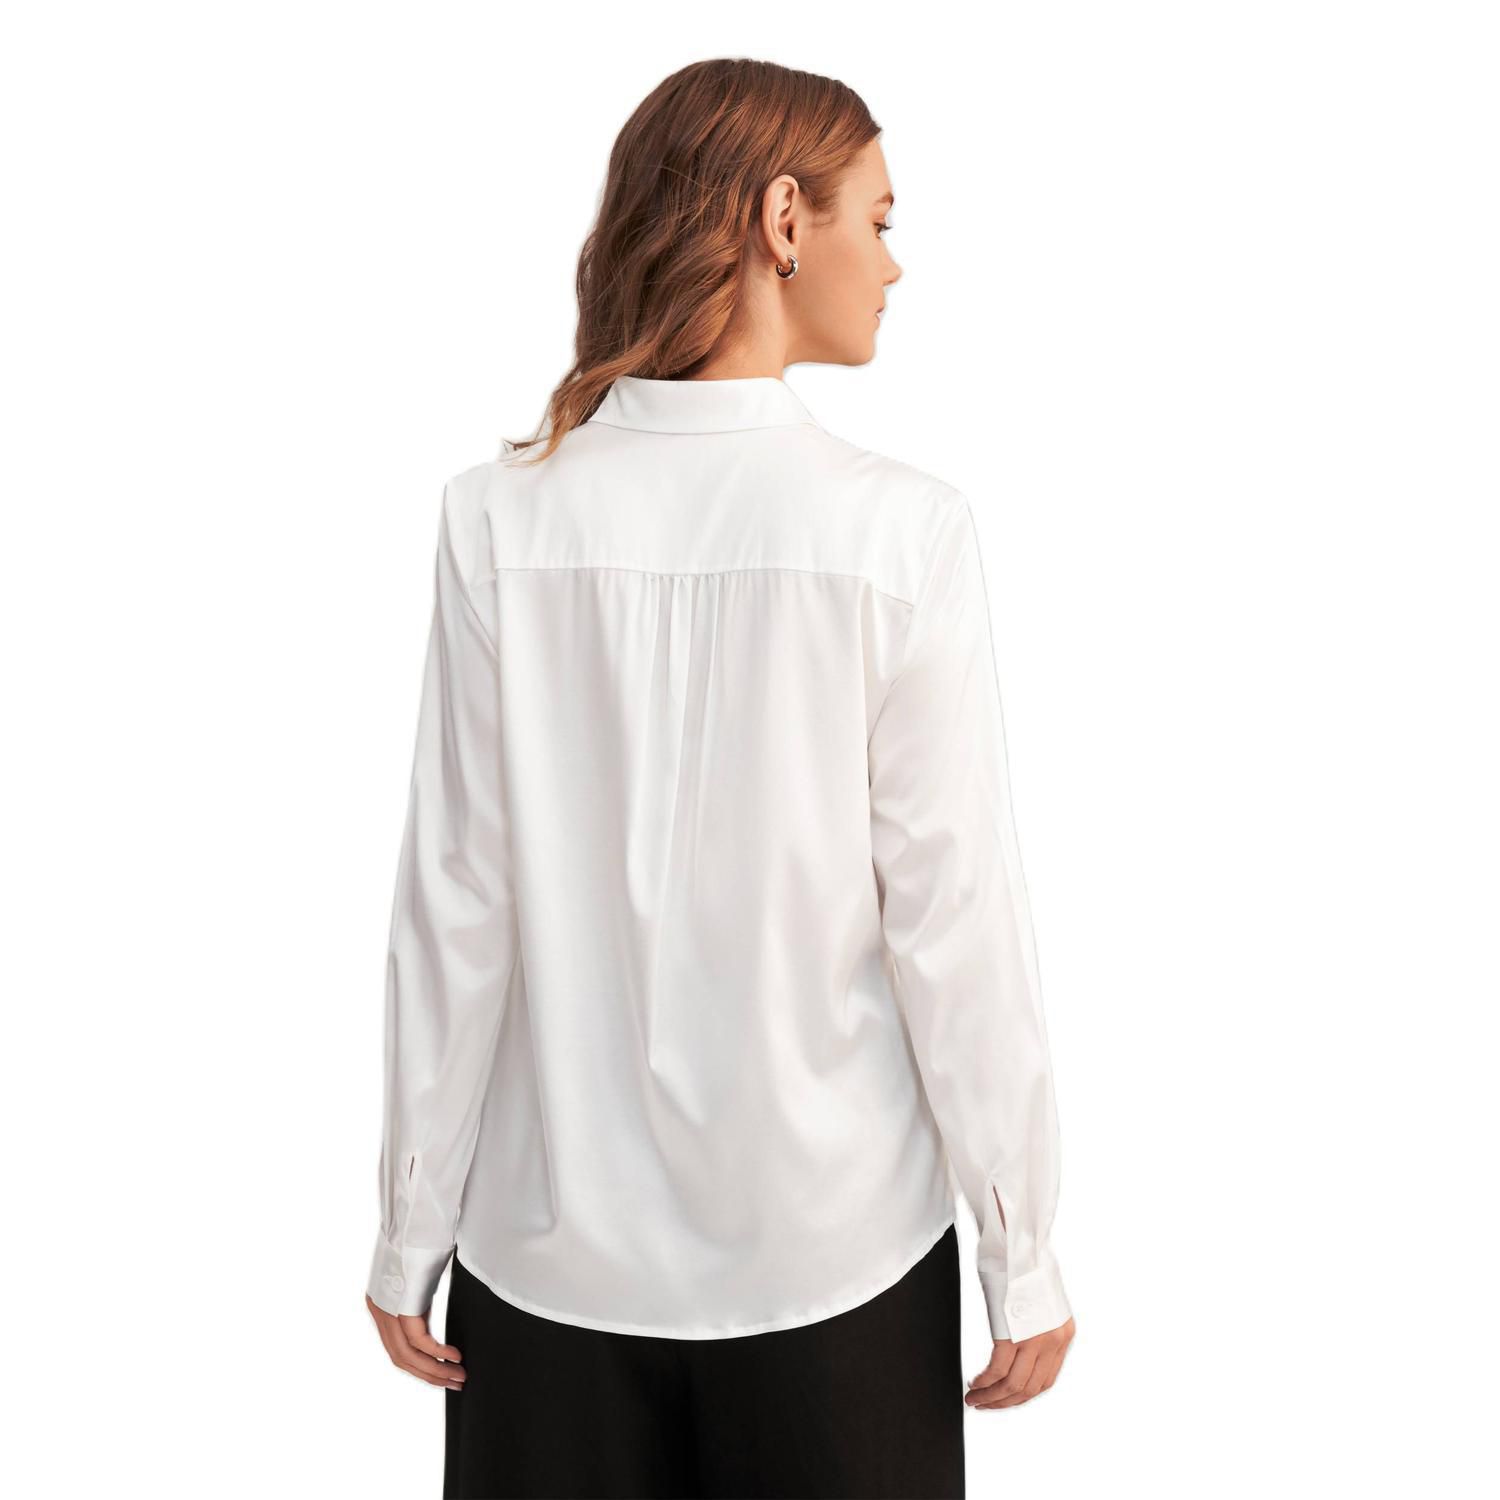 LILYSILK Женская шелковая блузка с длинными рукавами и воротником Lilysilk, черный